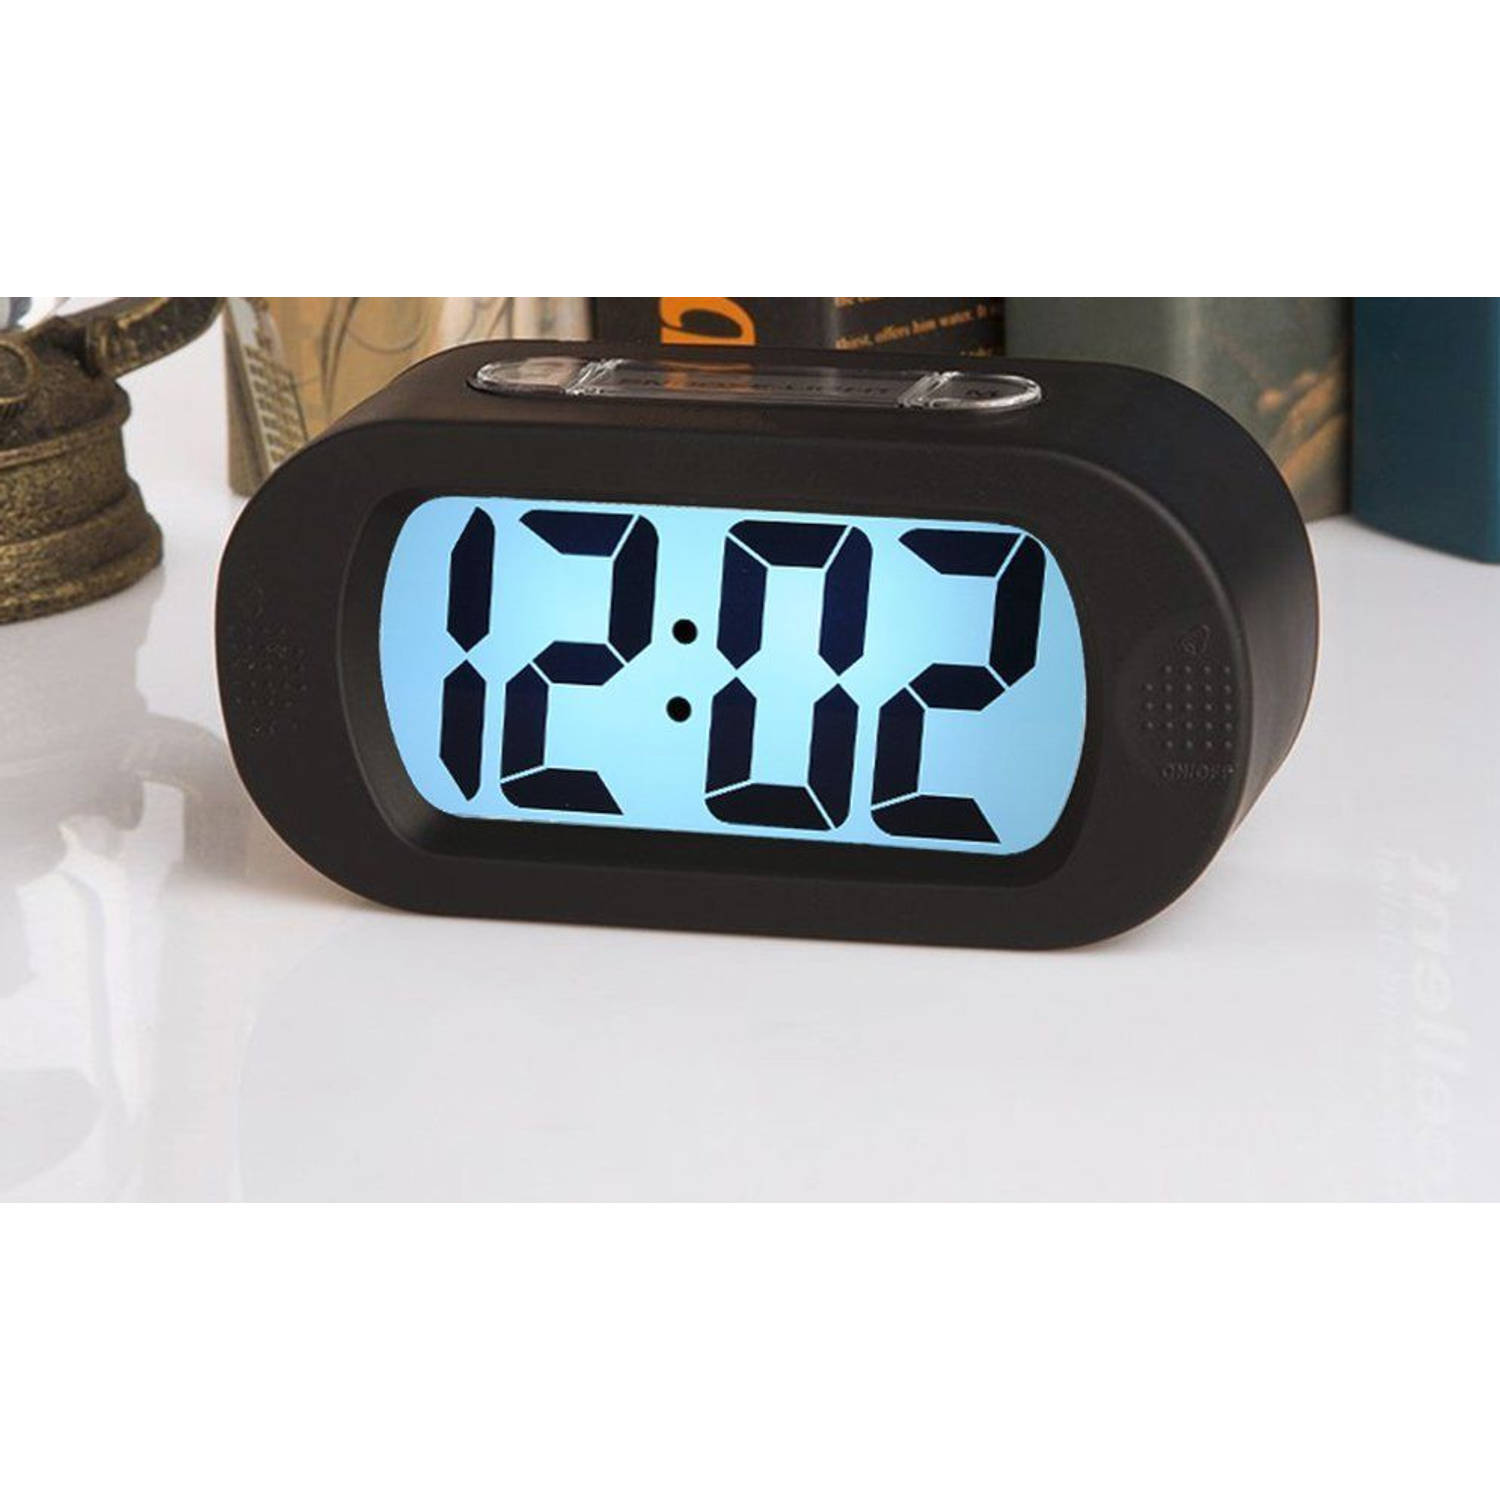 JAP AP17 digitale wekker - Stevige alarmklok - Met snooze en verlichtingsfunctie Beschermhoes rubber - Zwart | Blokker